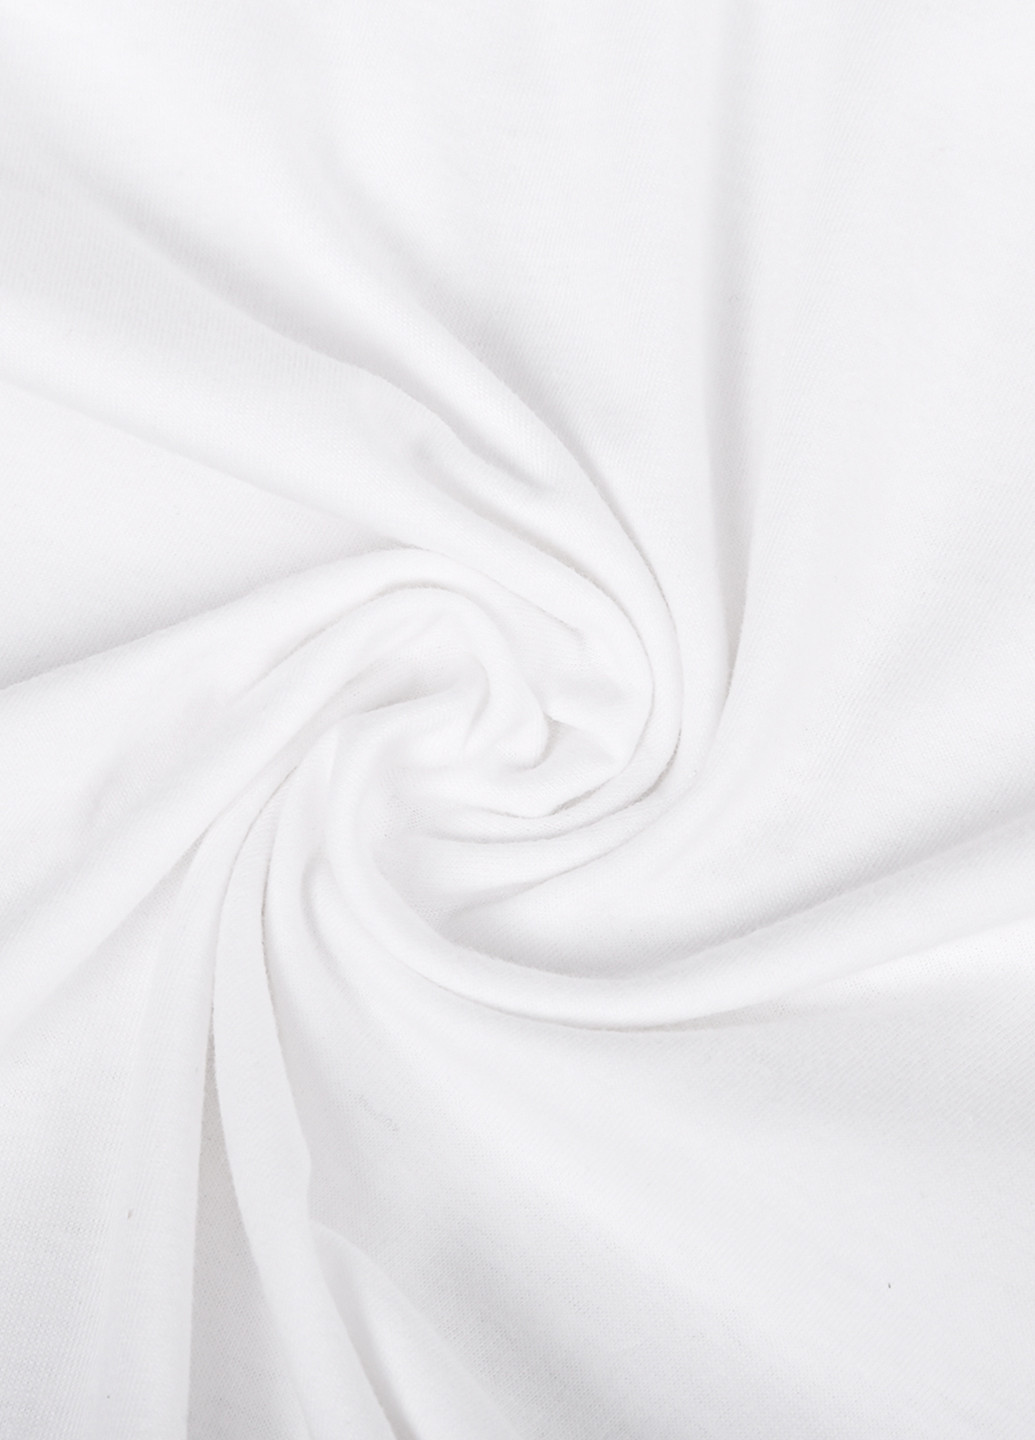 Белая демисезон футболка женская ты потрясающий киану ривз (keanu reeves) белый (8976-2010) xxl MobiPrint